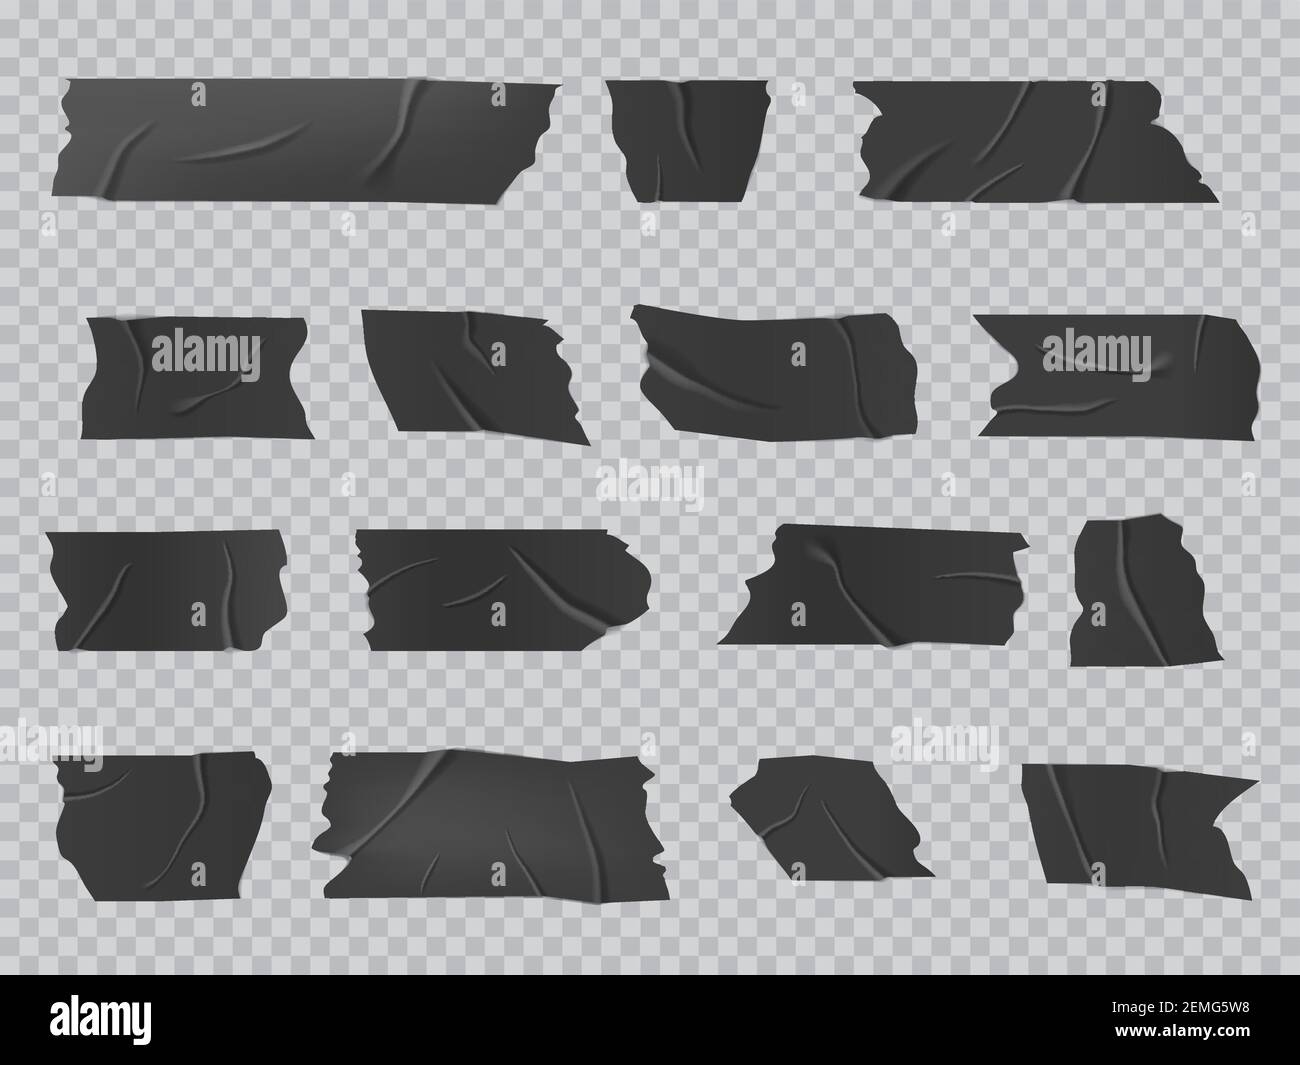 Klebeband, isolierte Vektor schwarz Kleber zerknittert Scotch Streifen,  klebende Klebebandstücke für fix, Reparatur oder Verpackung Gepäck.  Realistische 3D-Isolat Stock-Vektorgrafik - Alamy